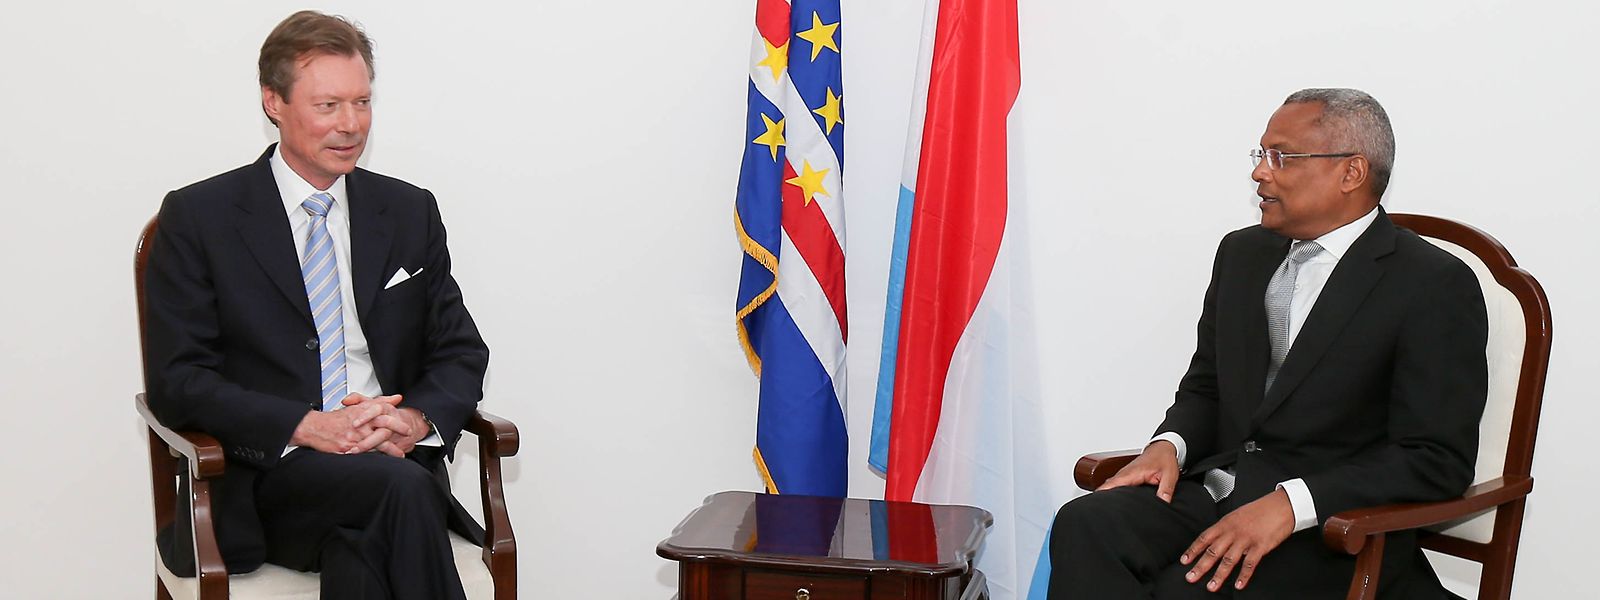 José Maria Neves recebeu o Grão-Duque Henri em 2015, quando era primeiro-ministro de Cabo Verde. Agora vem ao Luxemburgo enquanto Presidente da República.